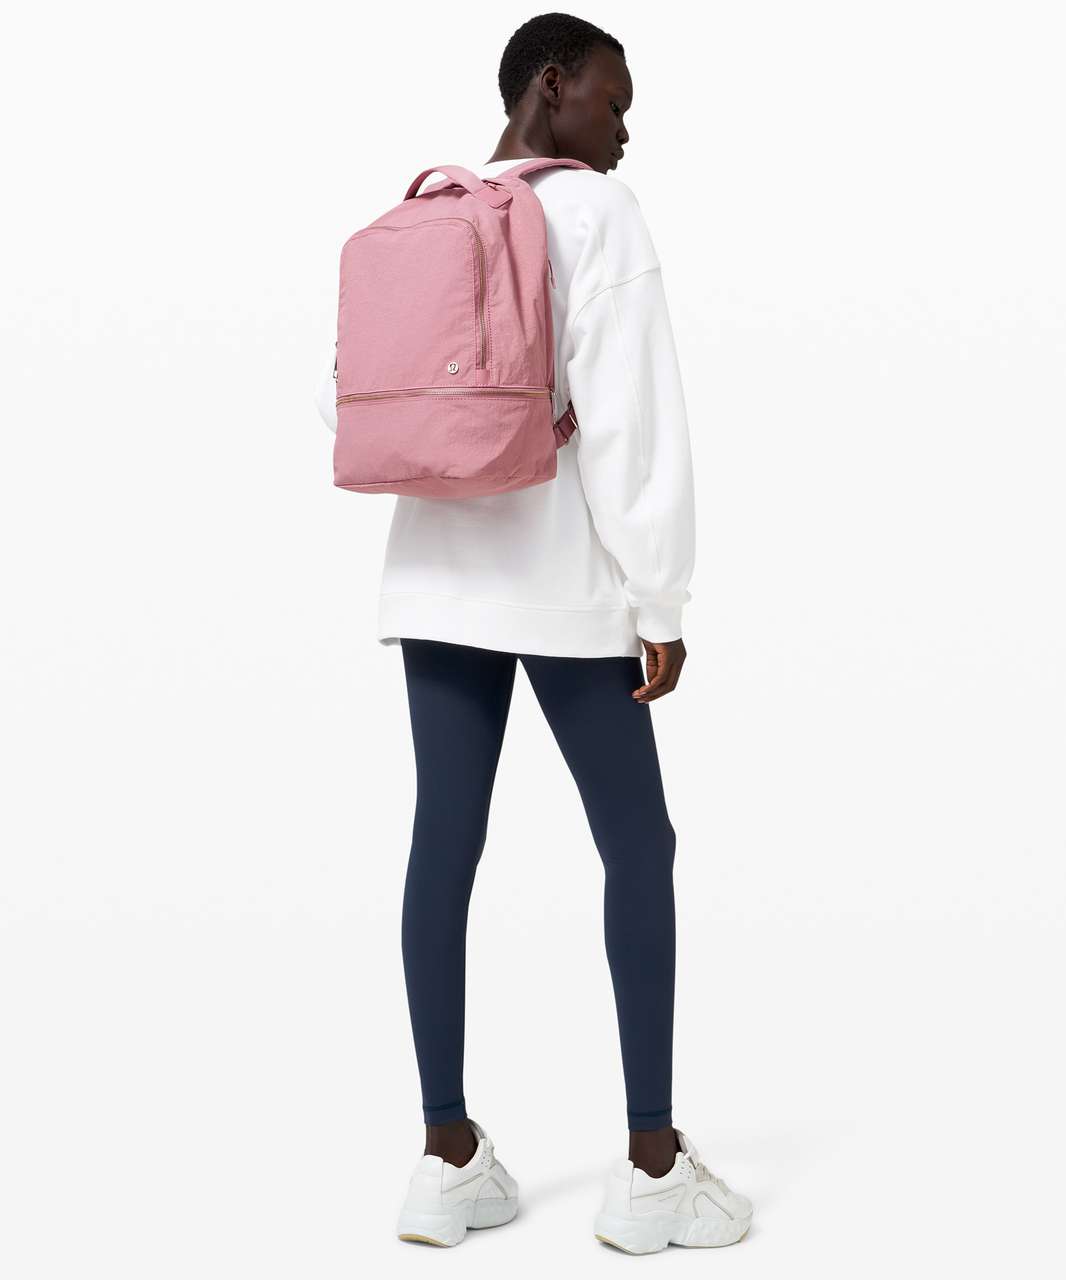 lululemon city adventurer backpack pink